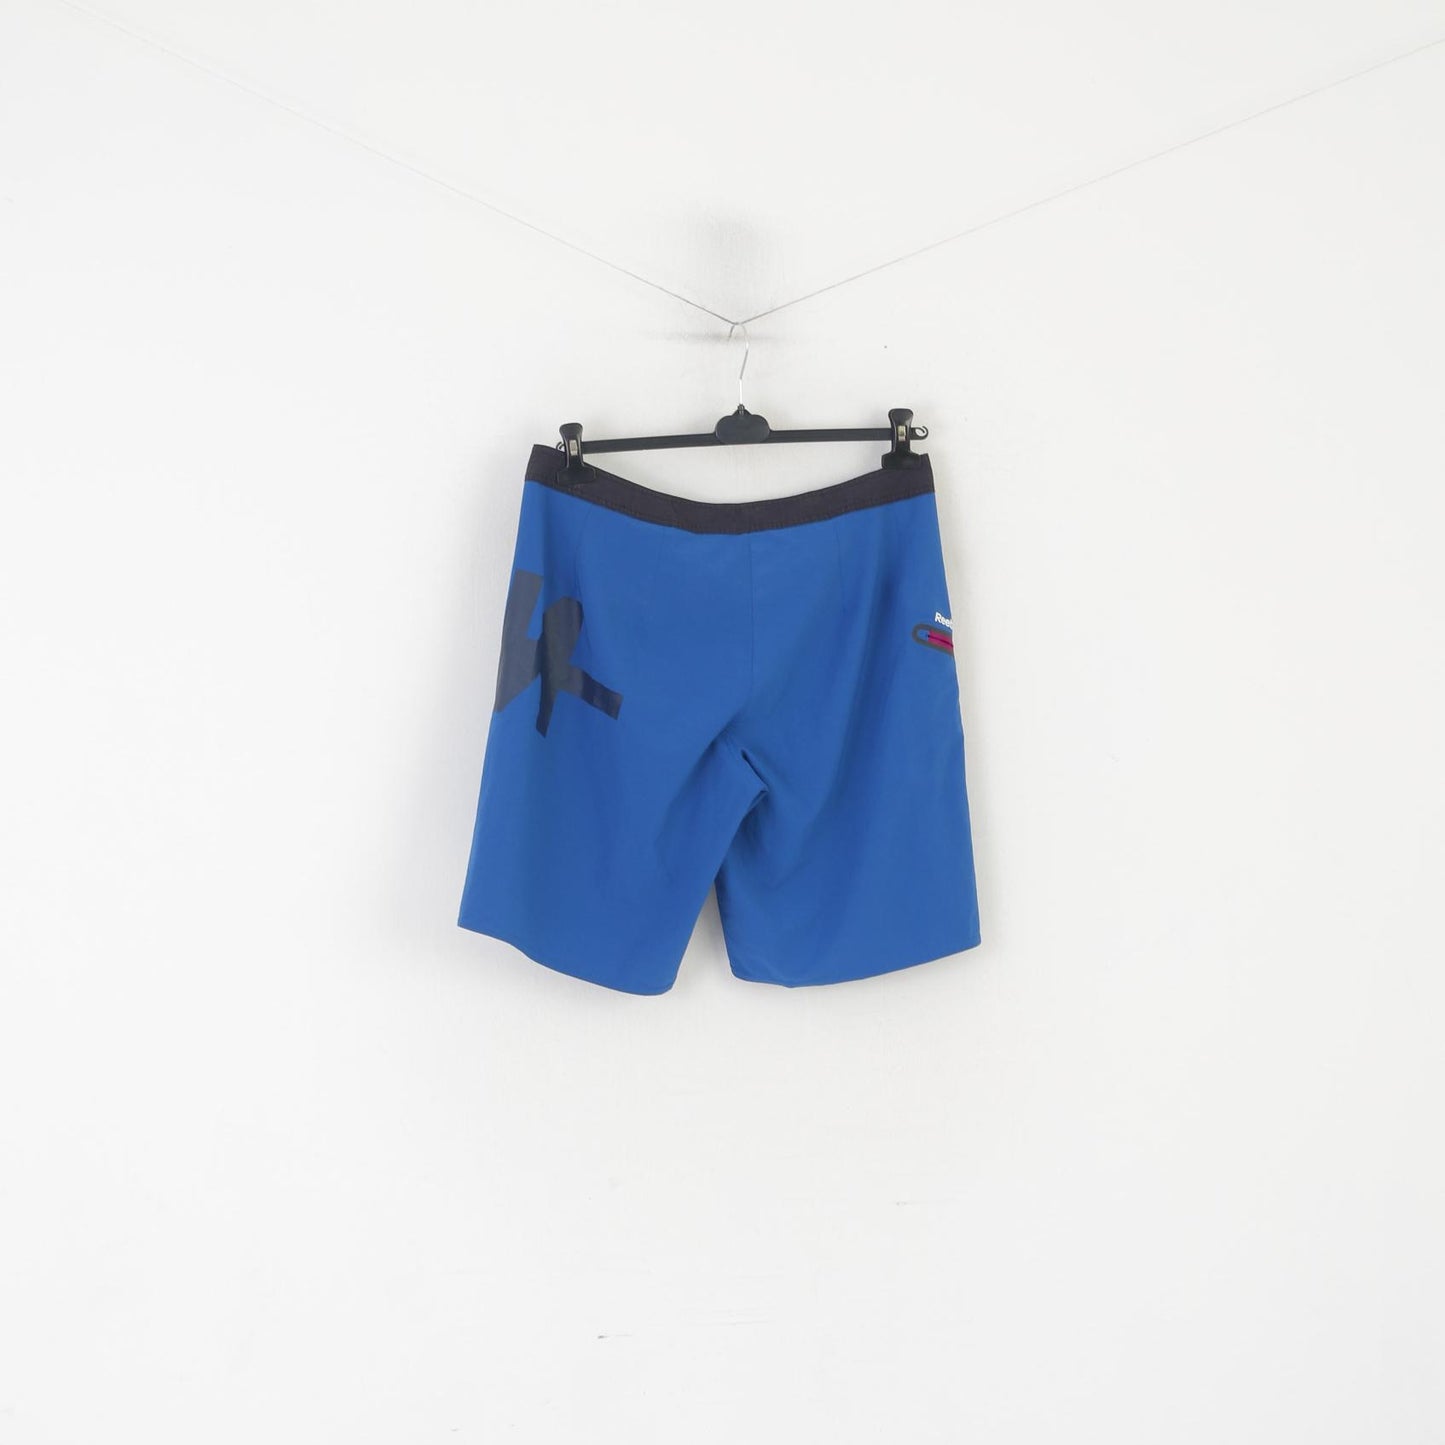 Reebok Crossfit Men 33 Shorts Blue Nylon Sportswear Run Activewear